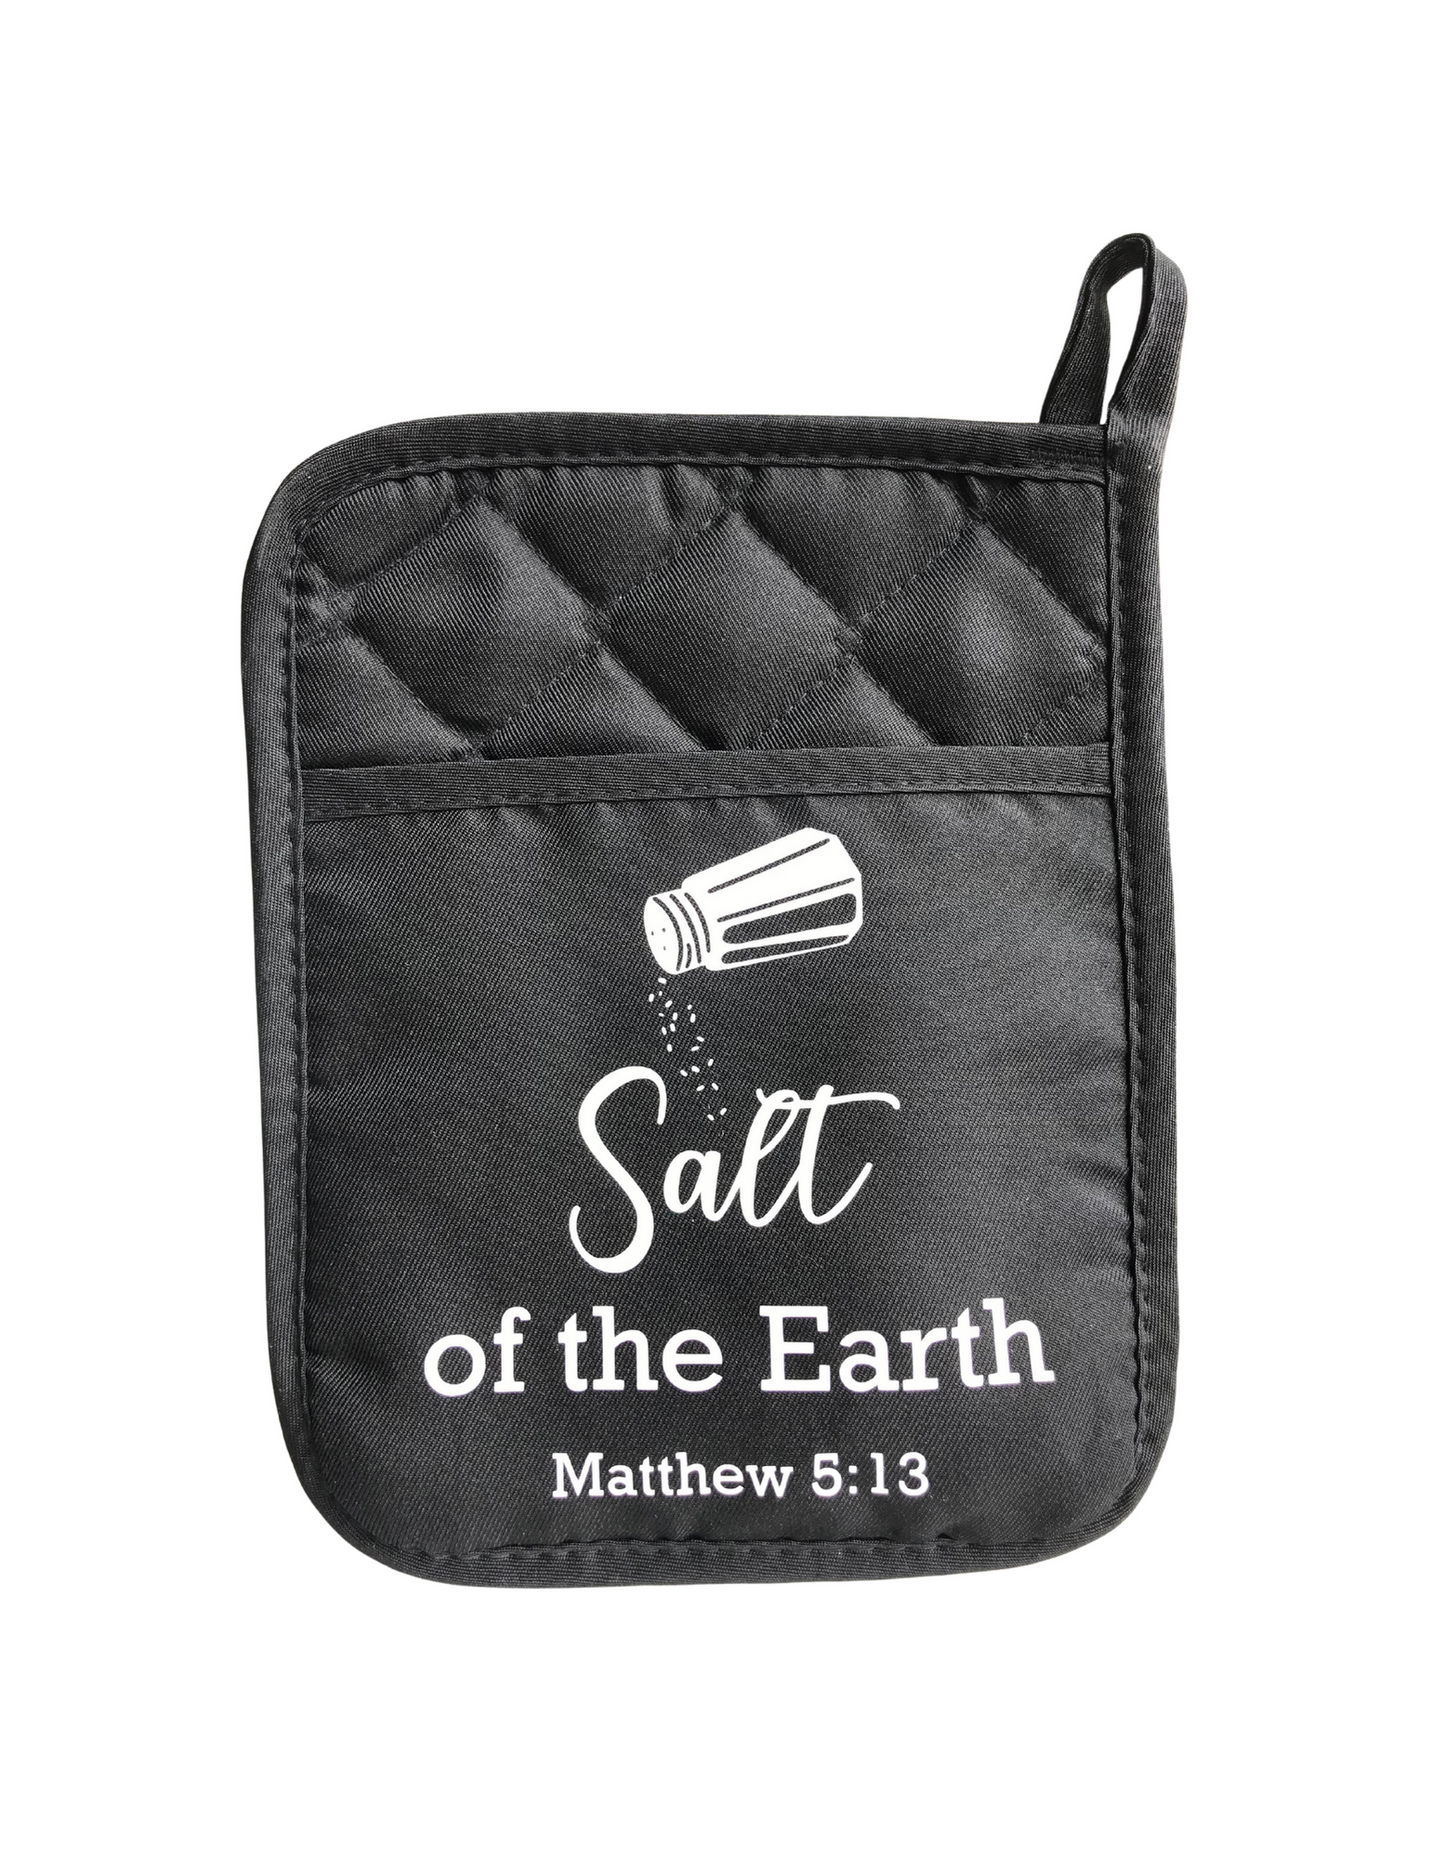 Salt of the Earth Potholder